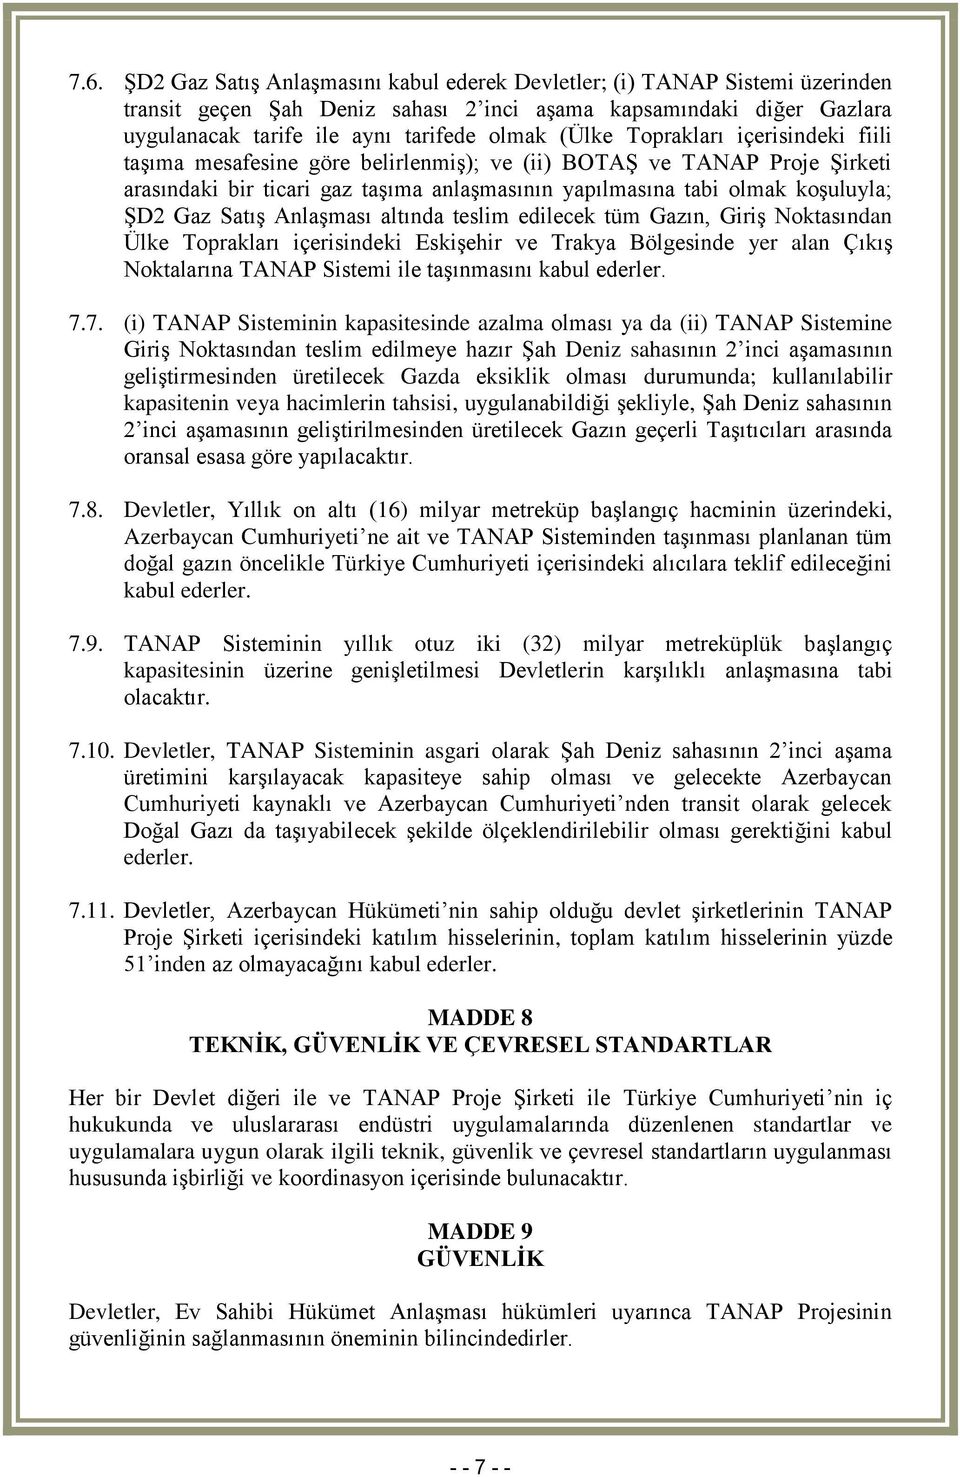 Satış Anlaşması altında teslim edilecek tüm Gazın, Giriş Noktasından Ülke Toprakları içerisindeki Eskişehir ve Trakya Bölgesinde yer alan Çıkış Noktalarına TANAP Sistemi ile taşınmasını kabul ederler.